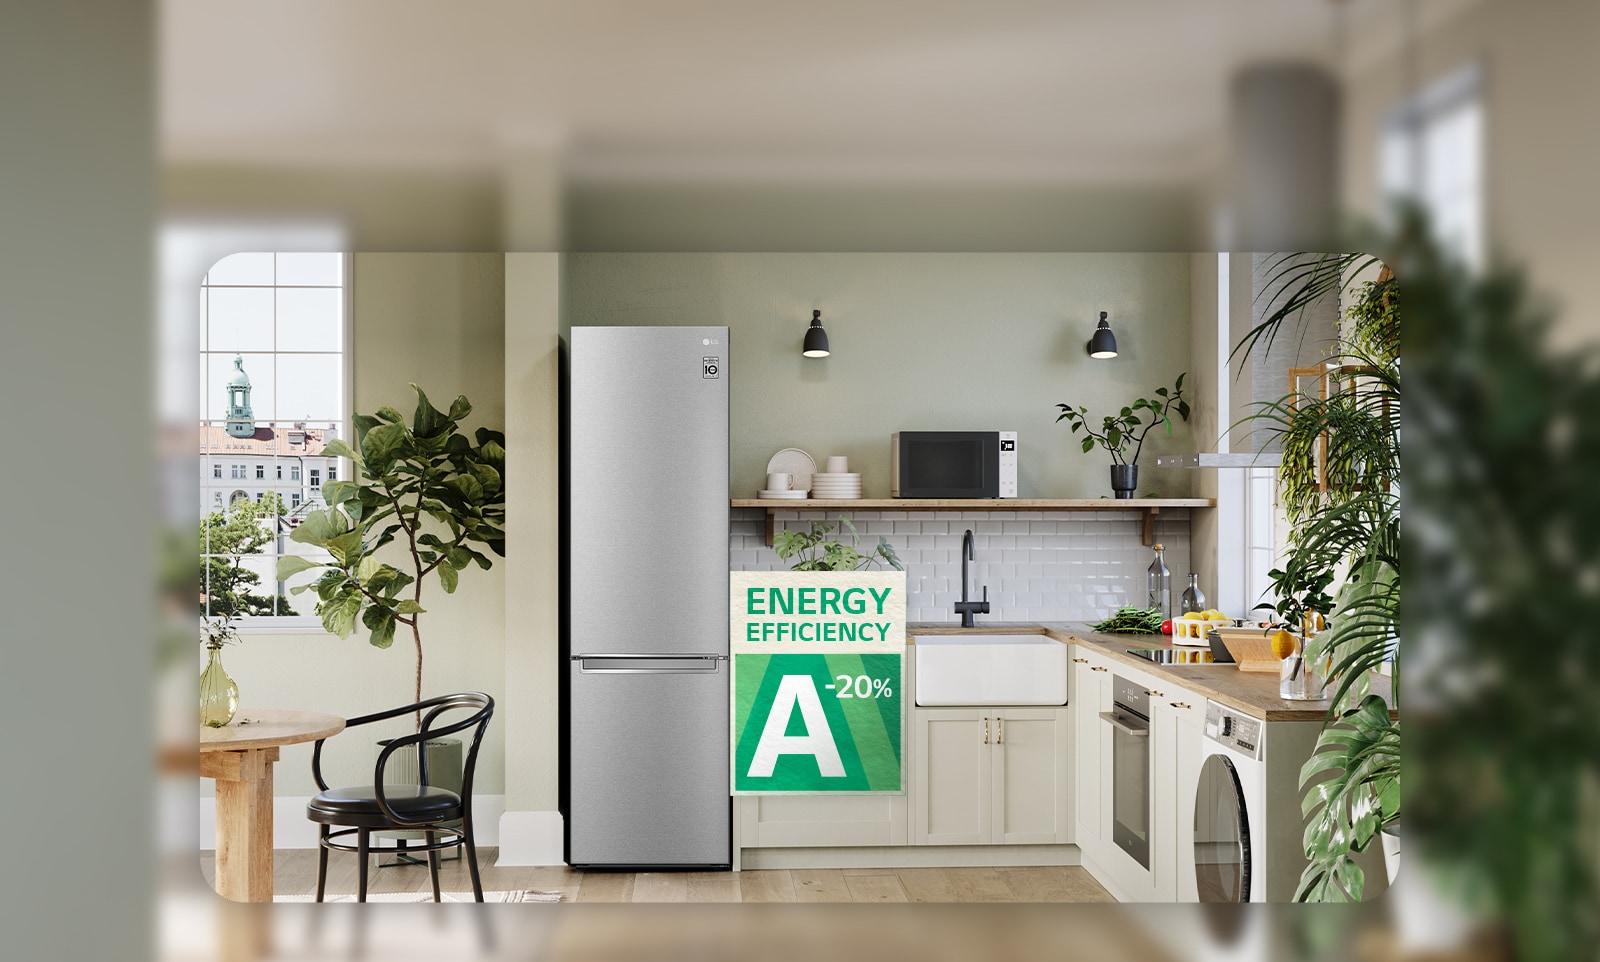 Billede af køkken med køleskab og energieffektivitets-skilt.